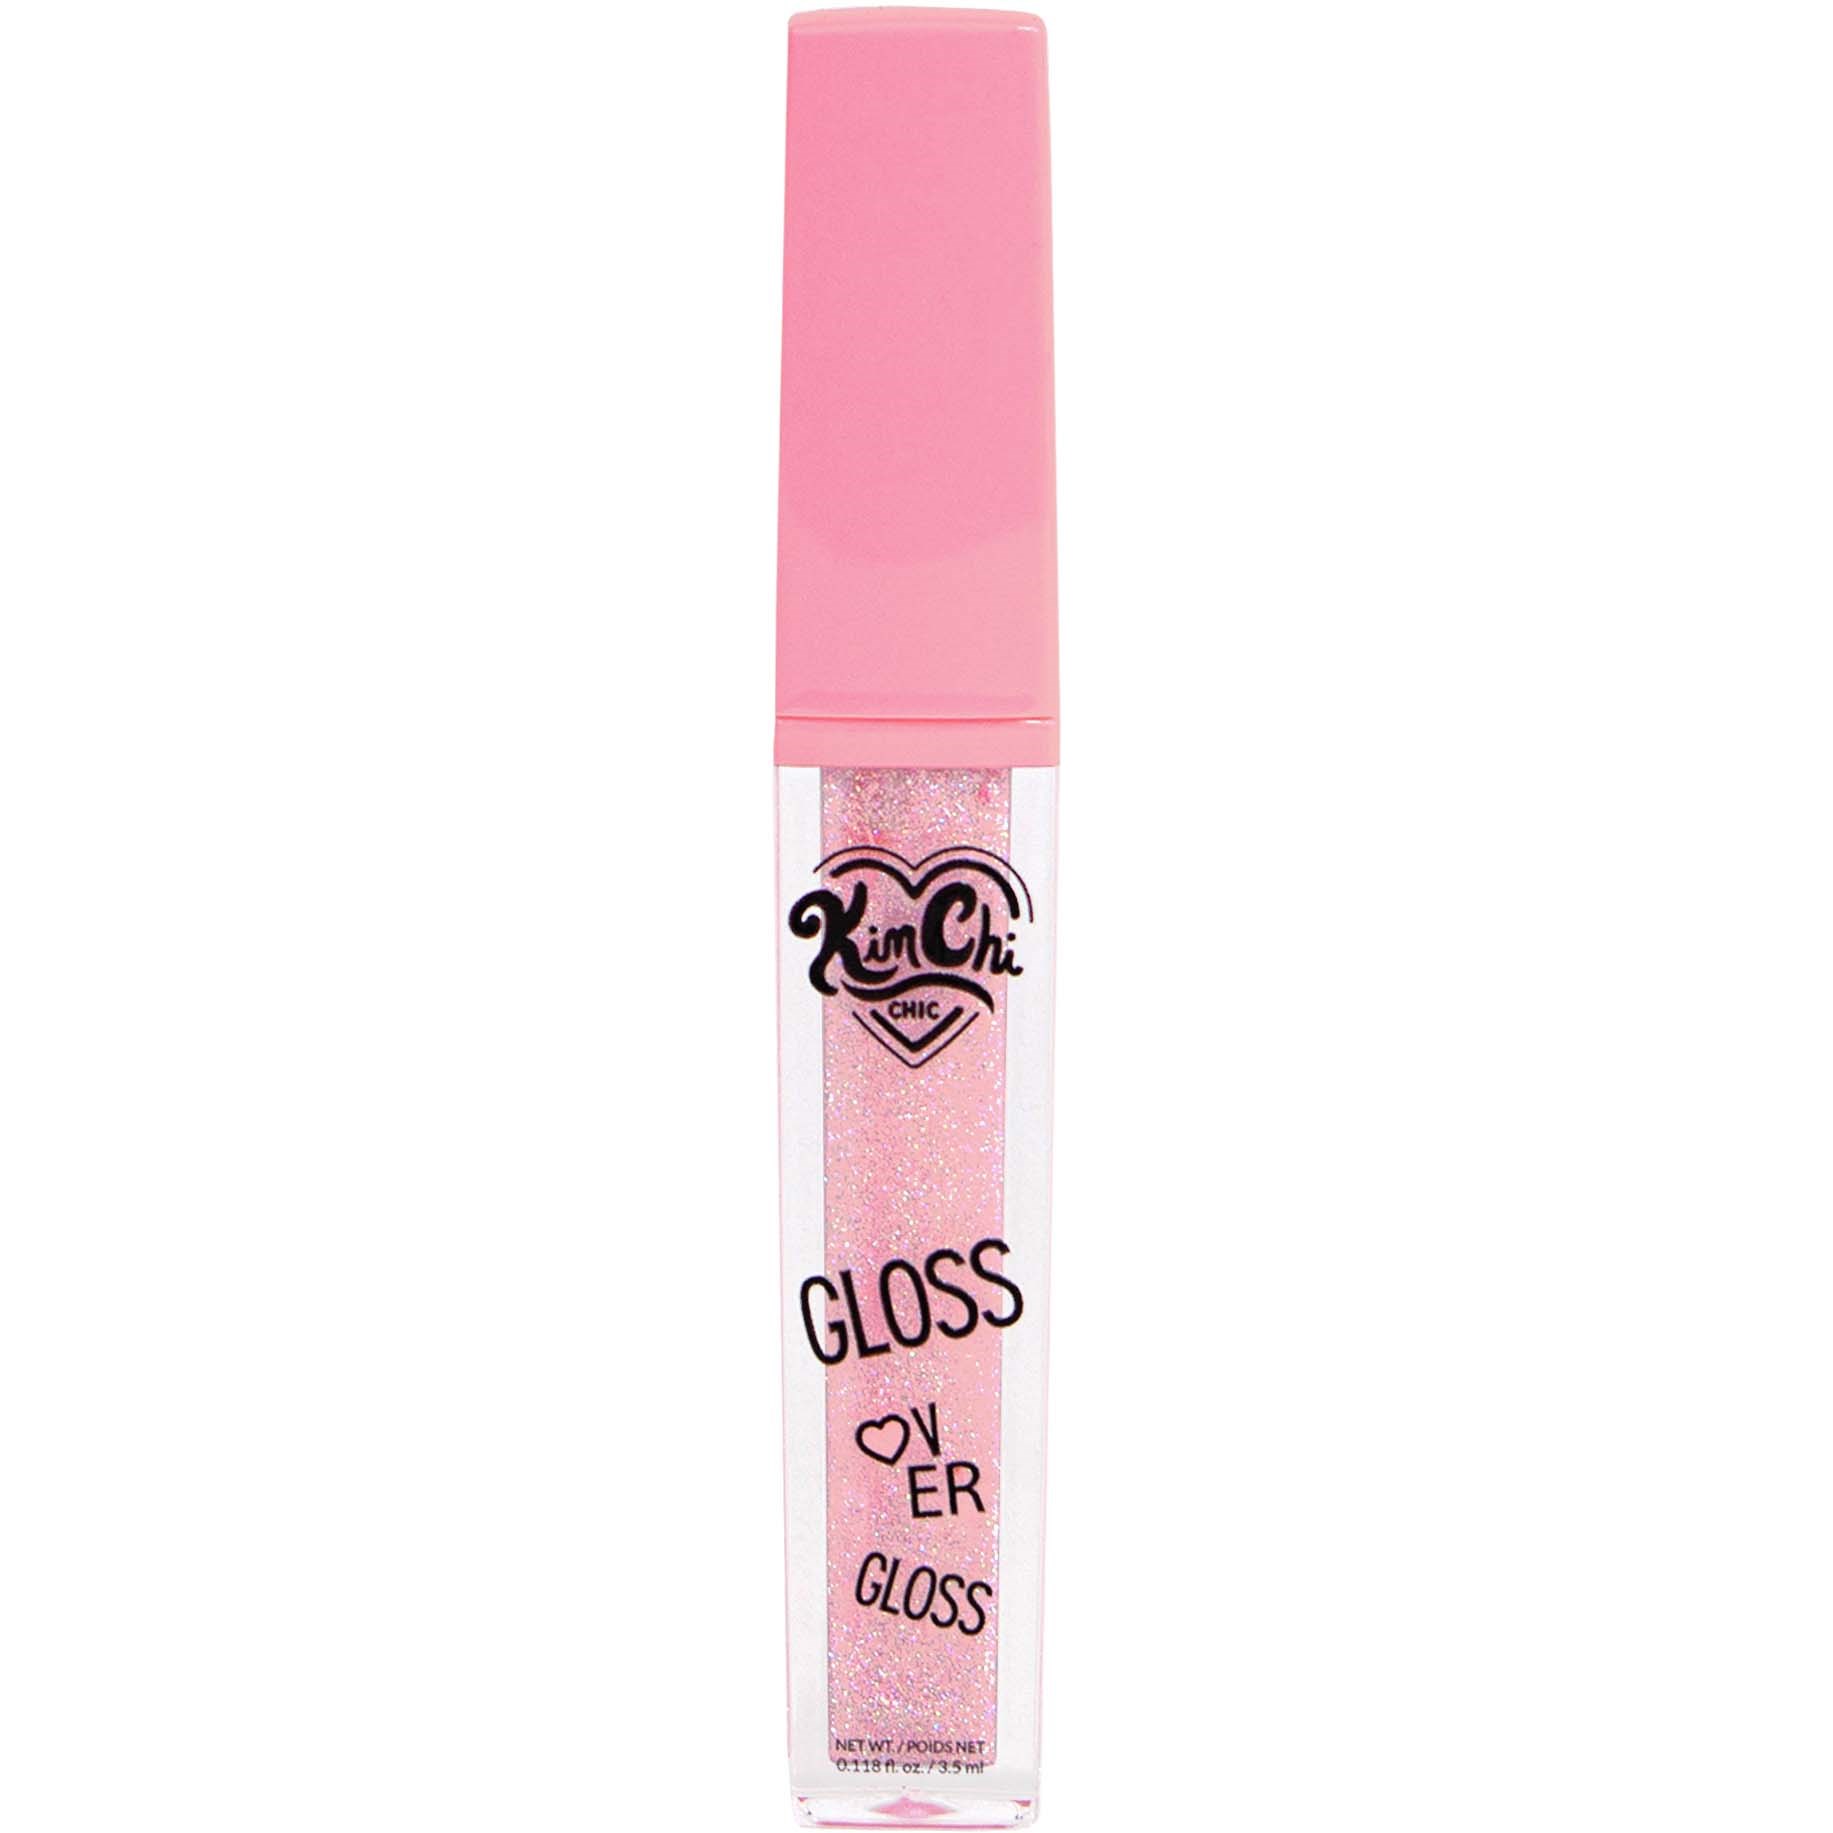 Läs mer om KimChi Chic Gloss Over Gloss Full Coverage Lipgloss Pink Shimmer